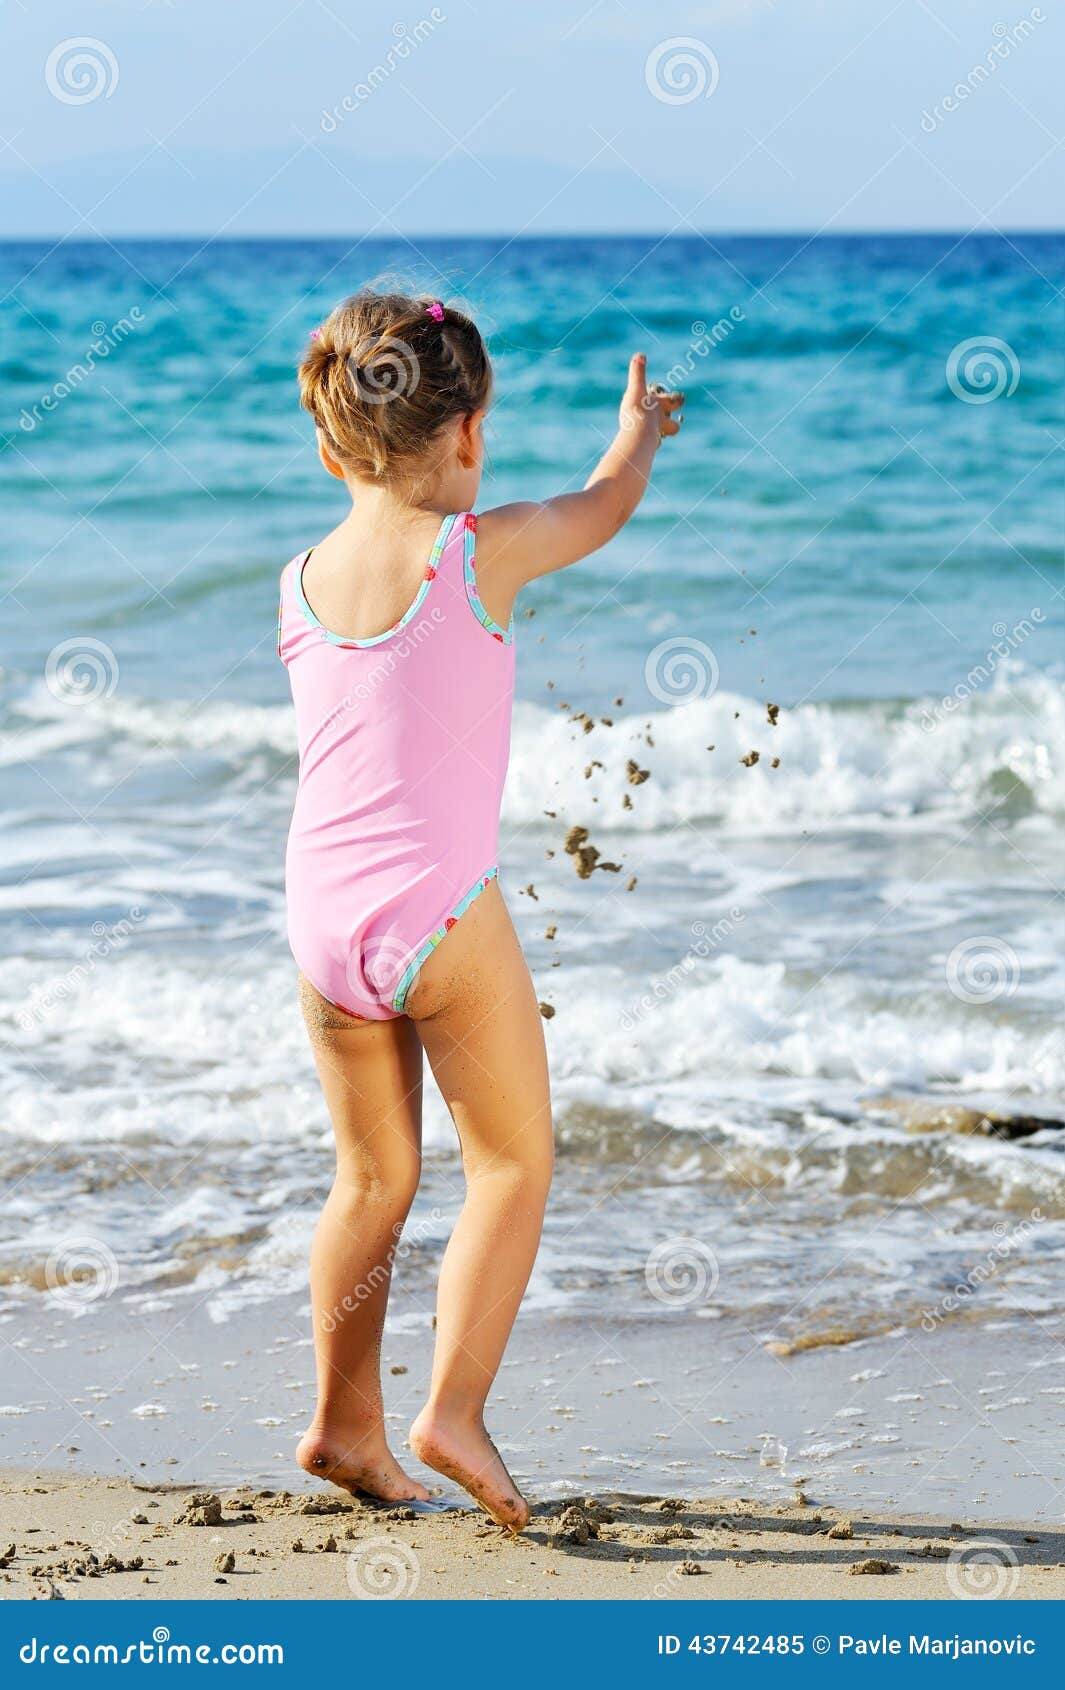 Девочки дети пляж. Детки в купальниках на пляже. Дети в мокрых купальниках на море. Шестилетняя на пляже.